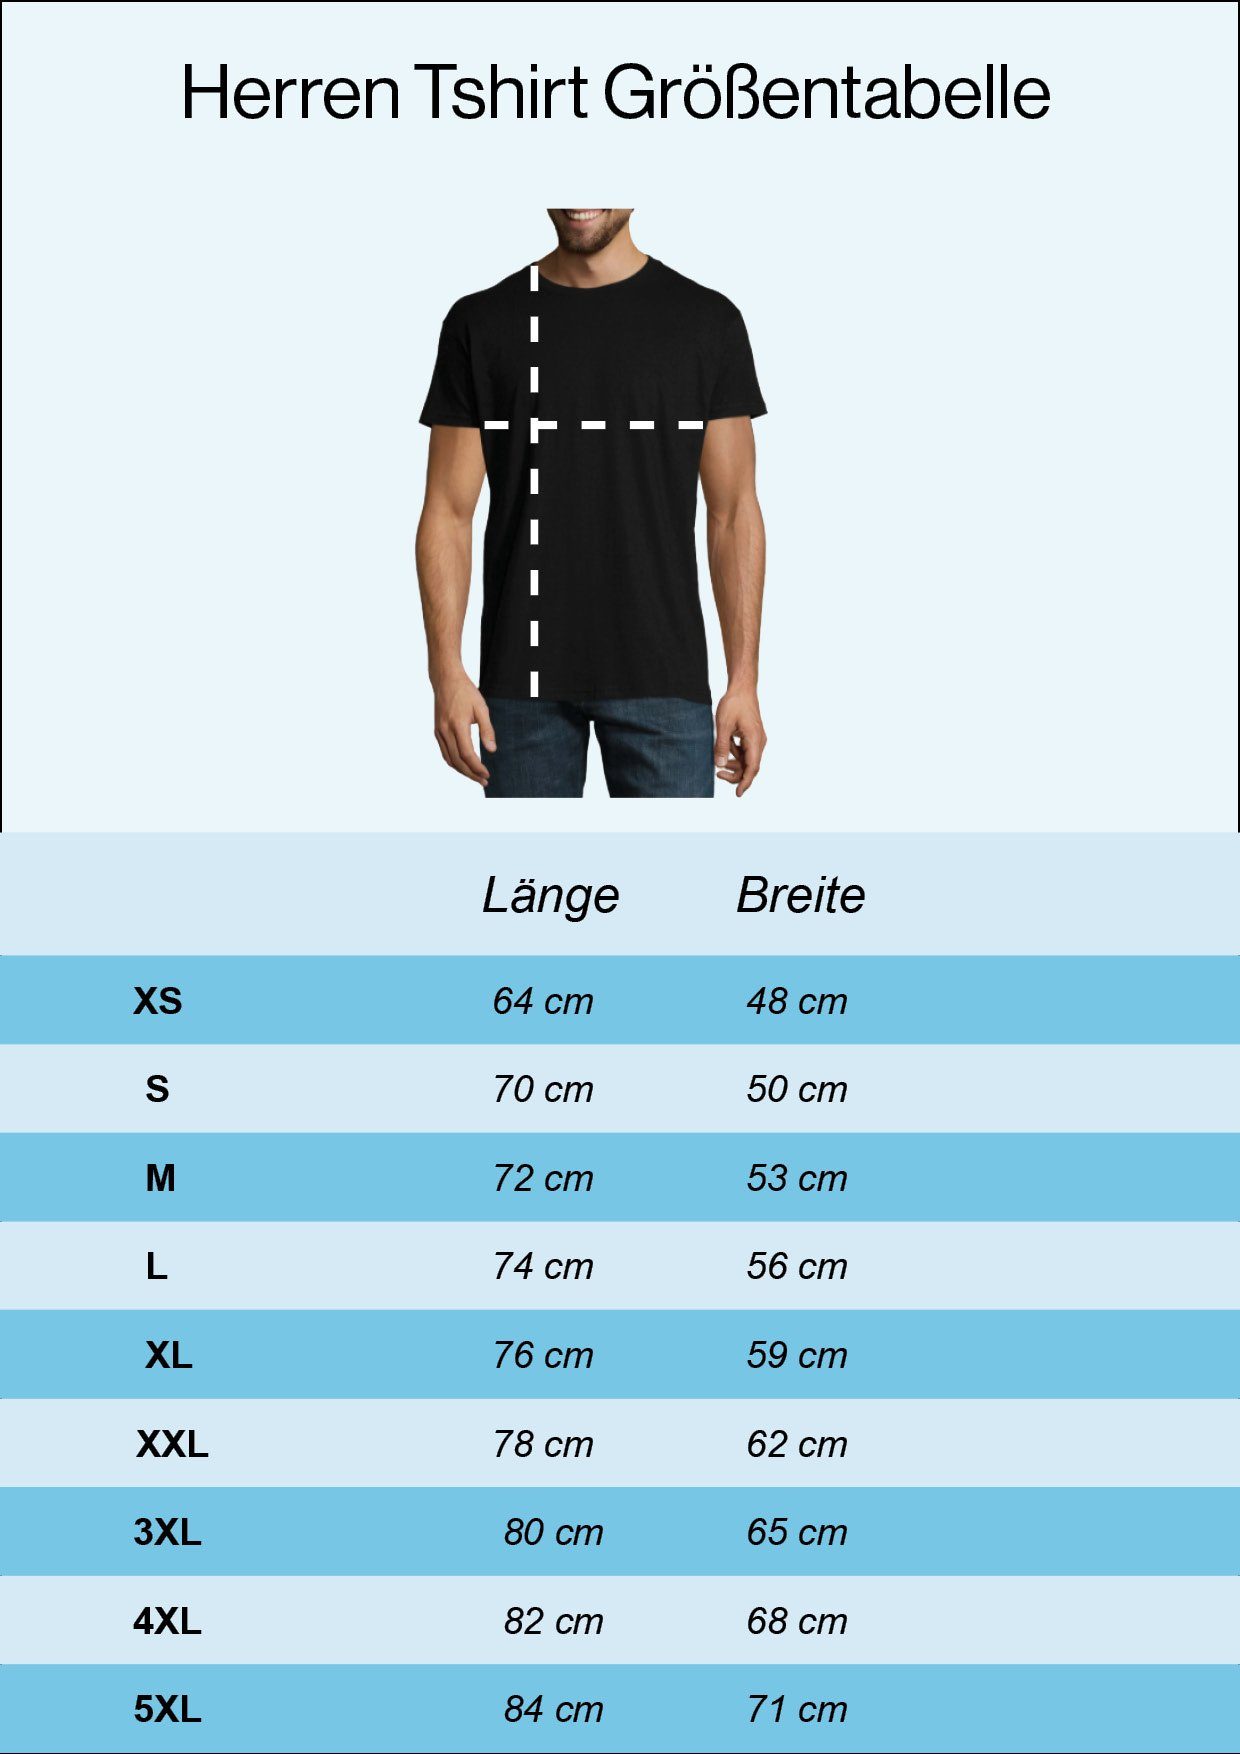 Der Designz Frontprint Weiß Shirt Youth lustigem mit Baustelle Herren Traktor T-Shirt König